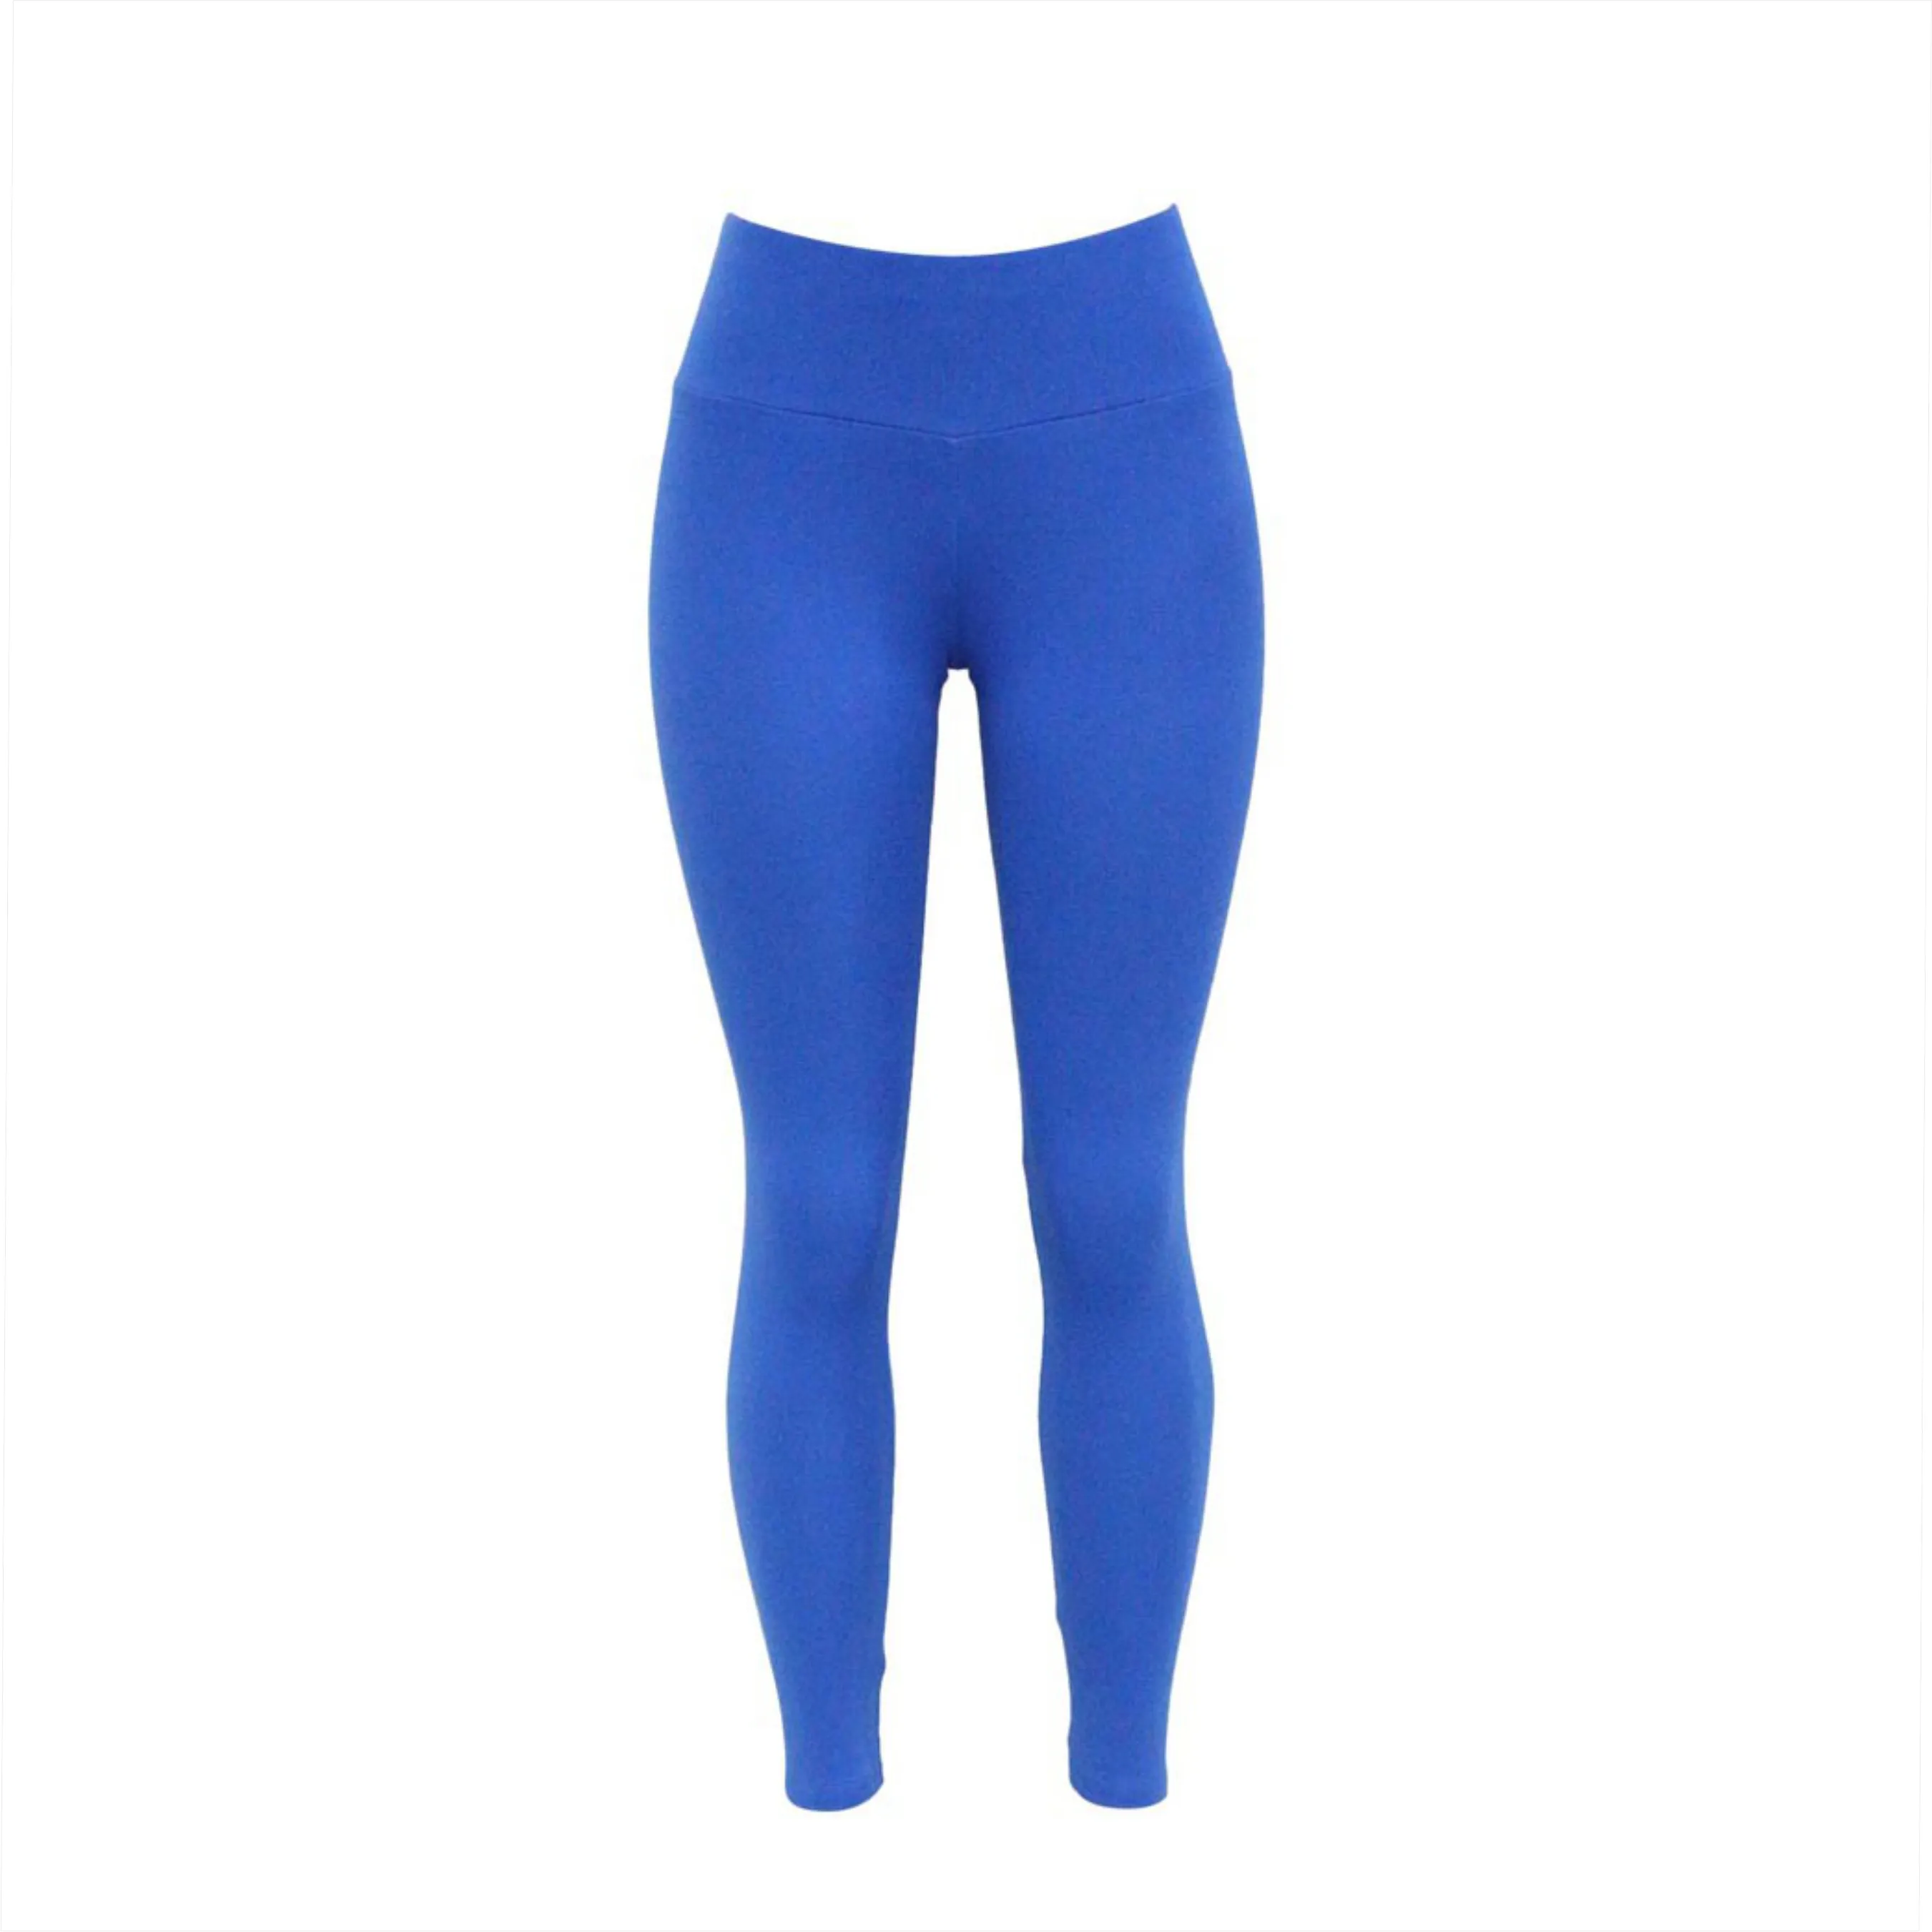 Blue Leggings / High waist workout comfortable custom yoga gym leggings for women